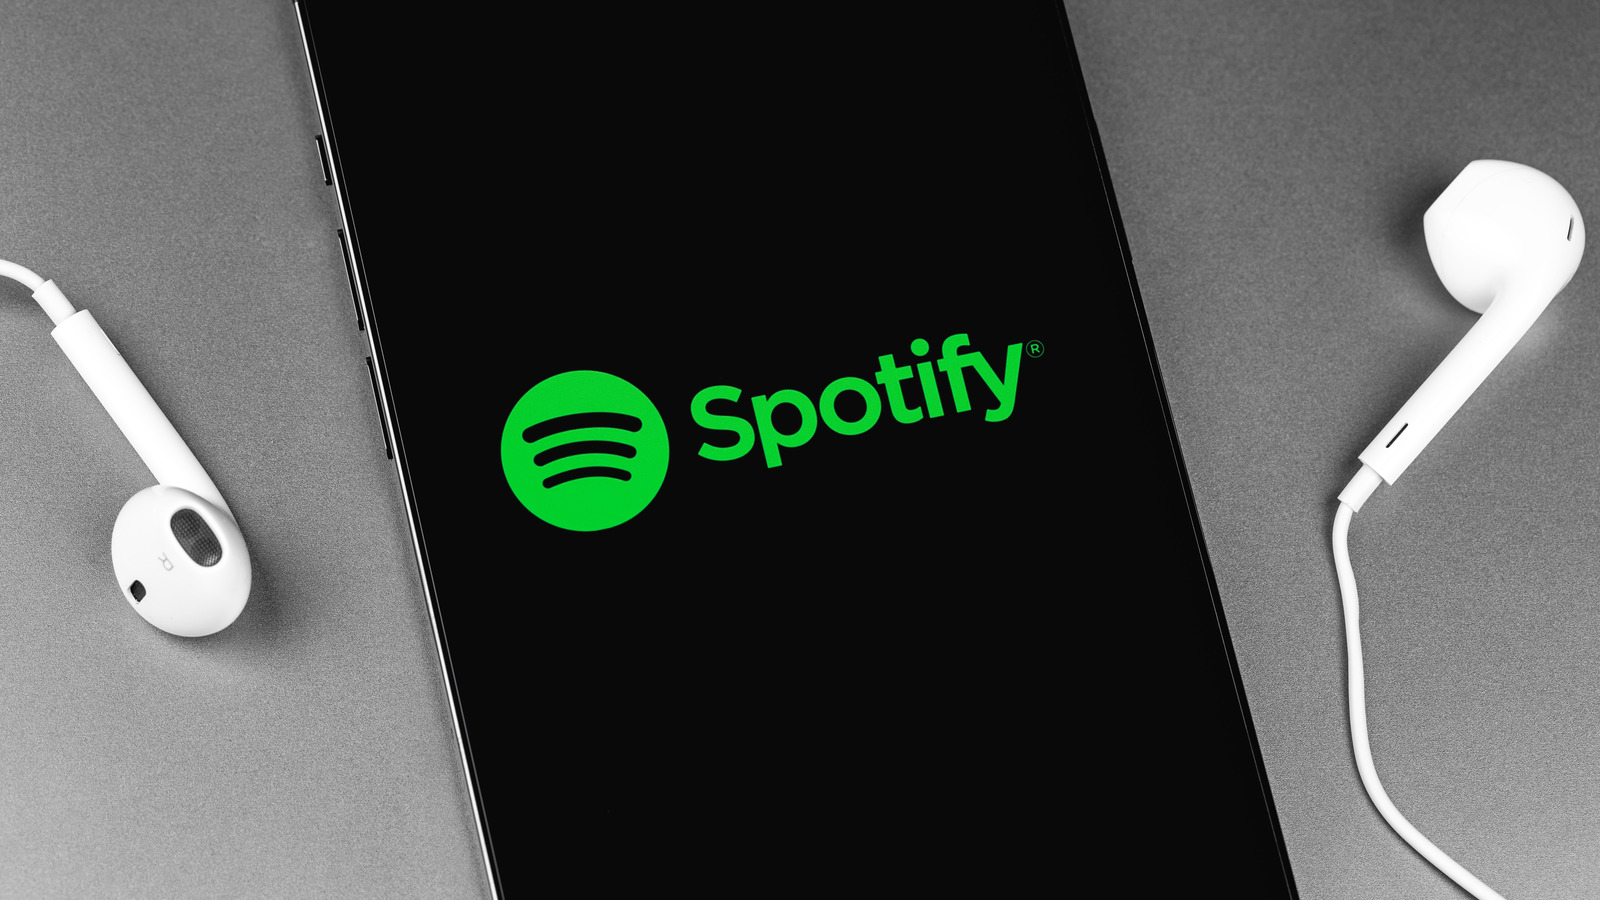 “روز” جدید Spotify در طول روز تغییر می کند